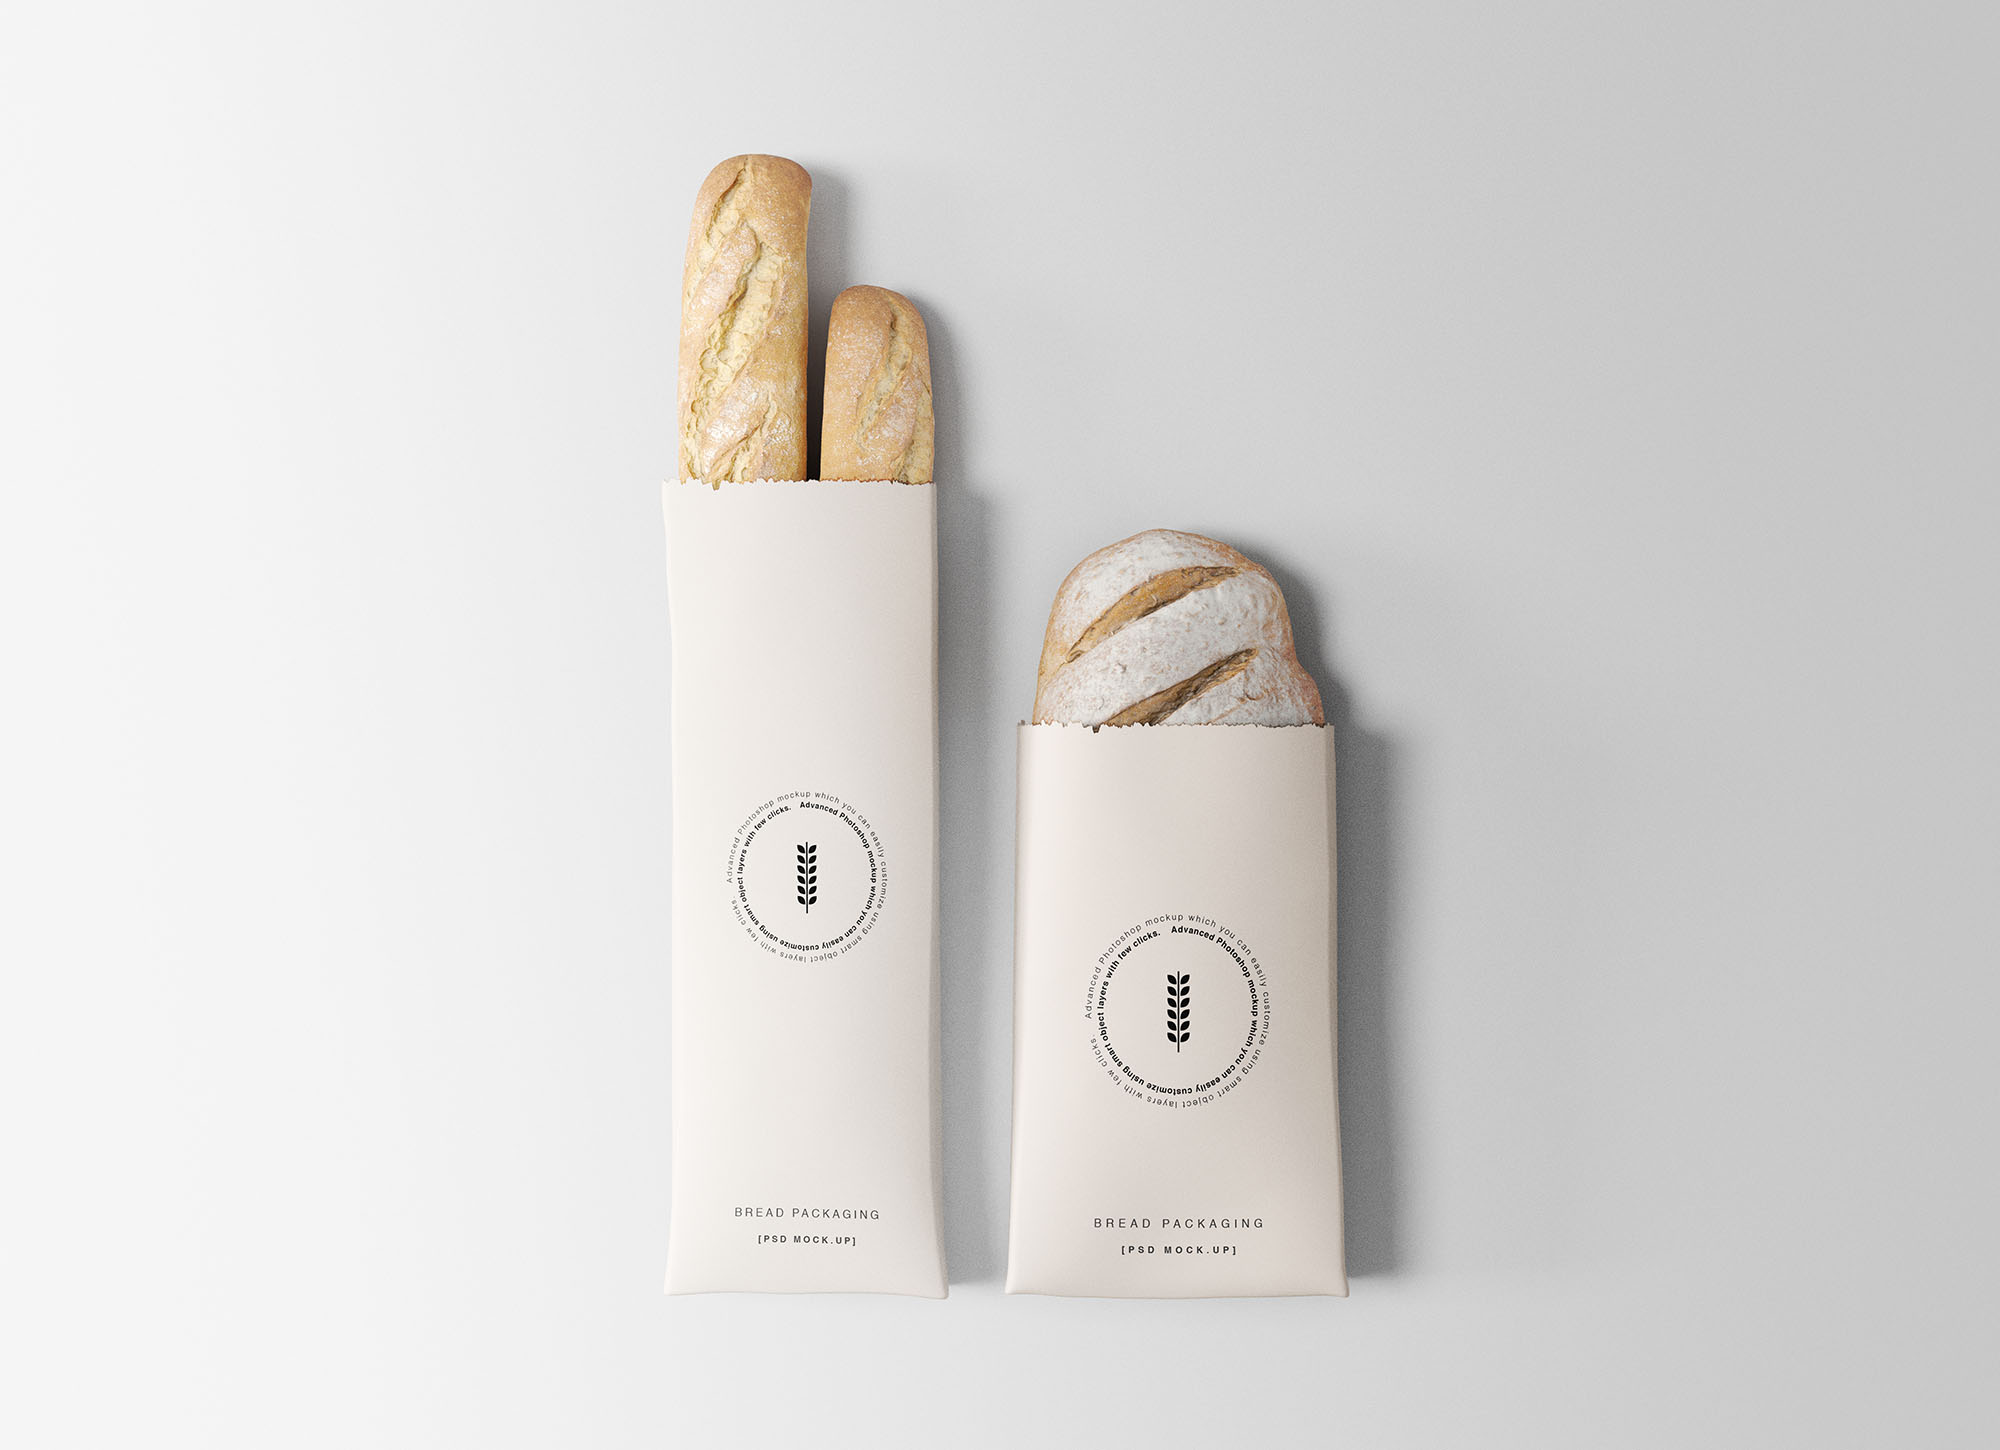 面包外带纸袋印刷设计图第一素材精选 Bread Packaging Mockup插图